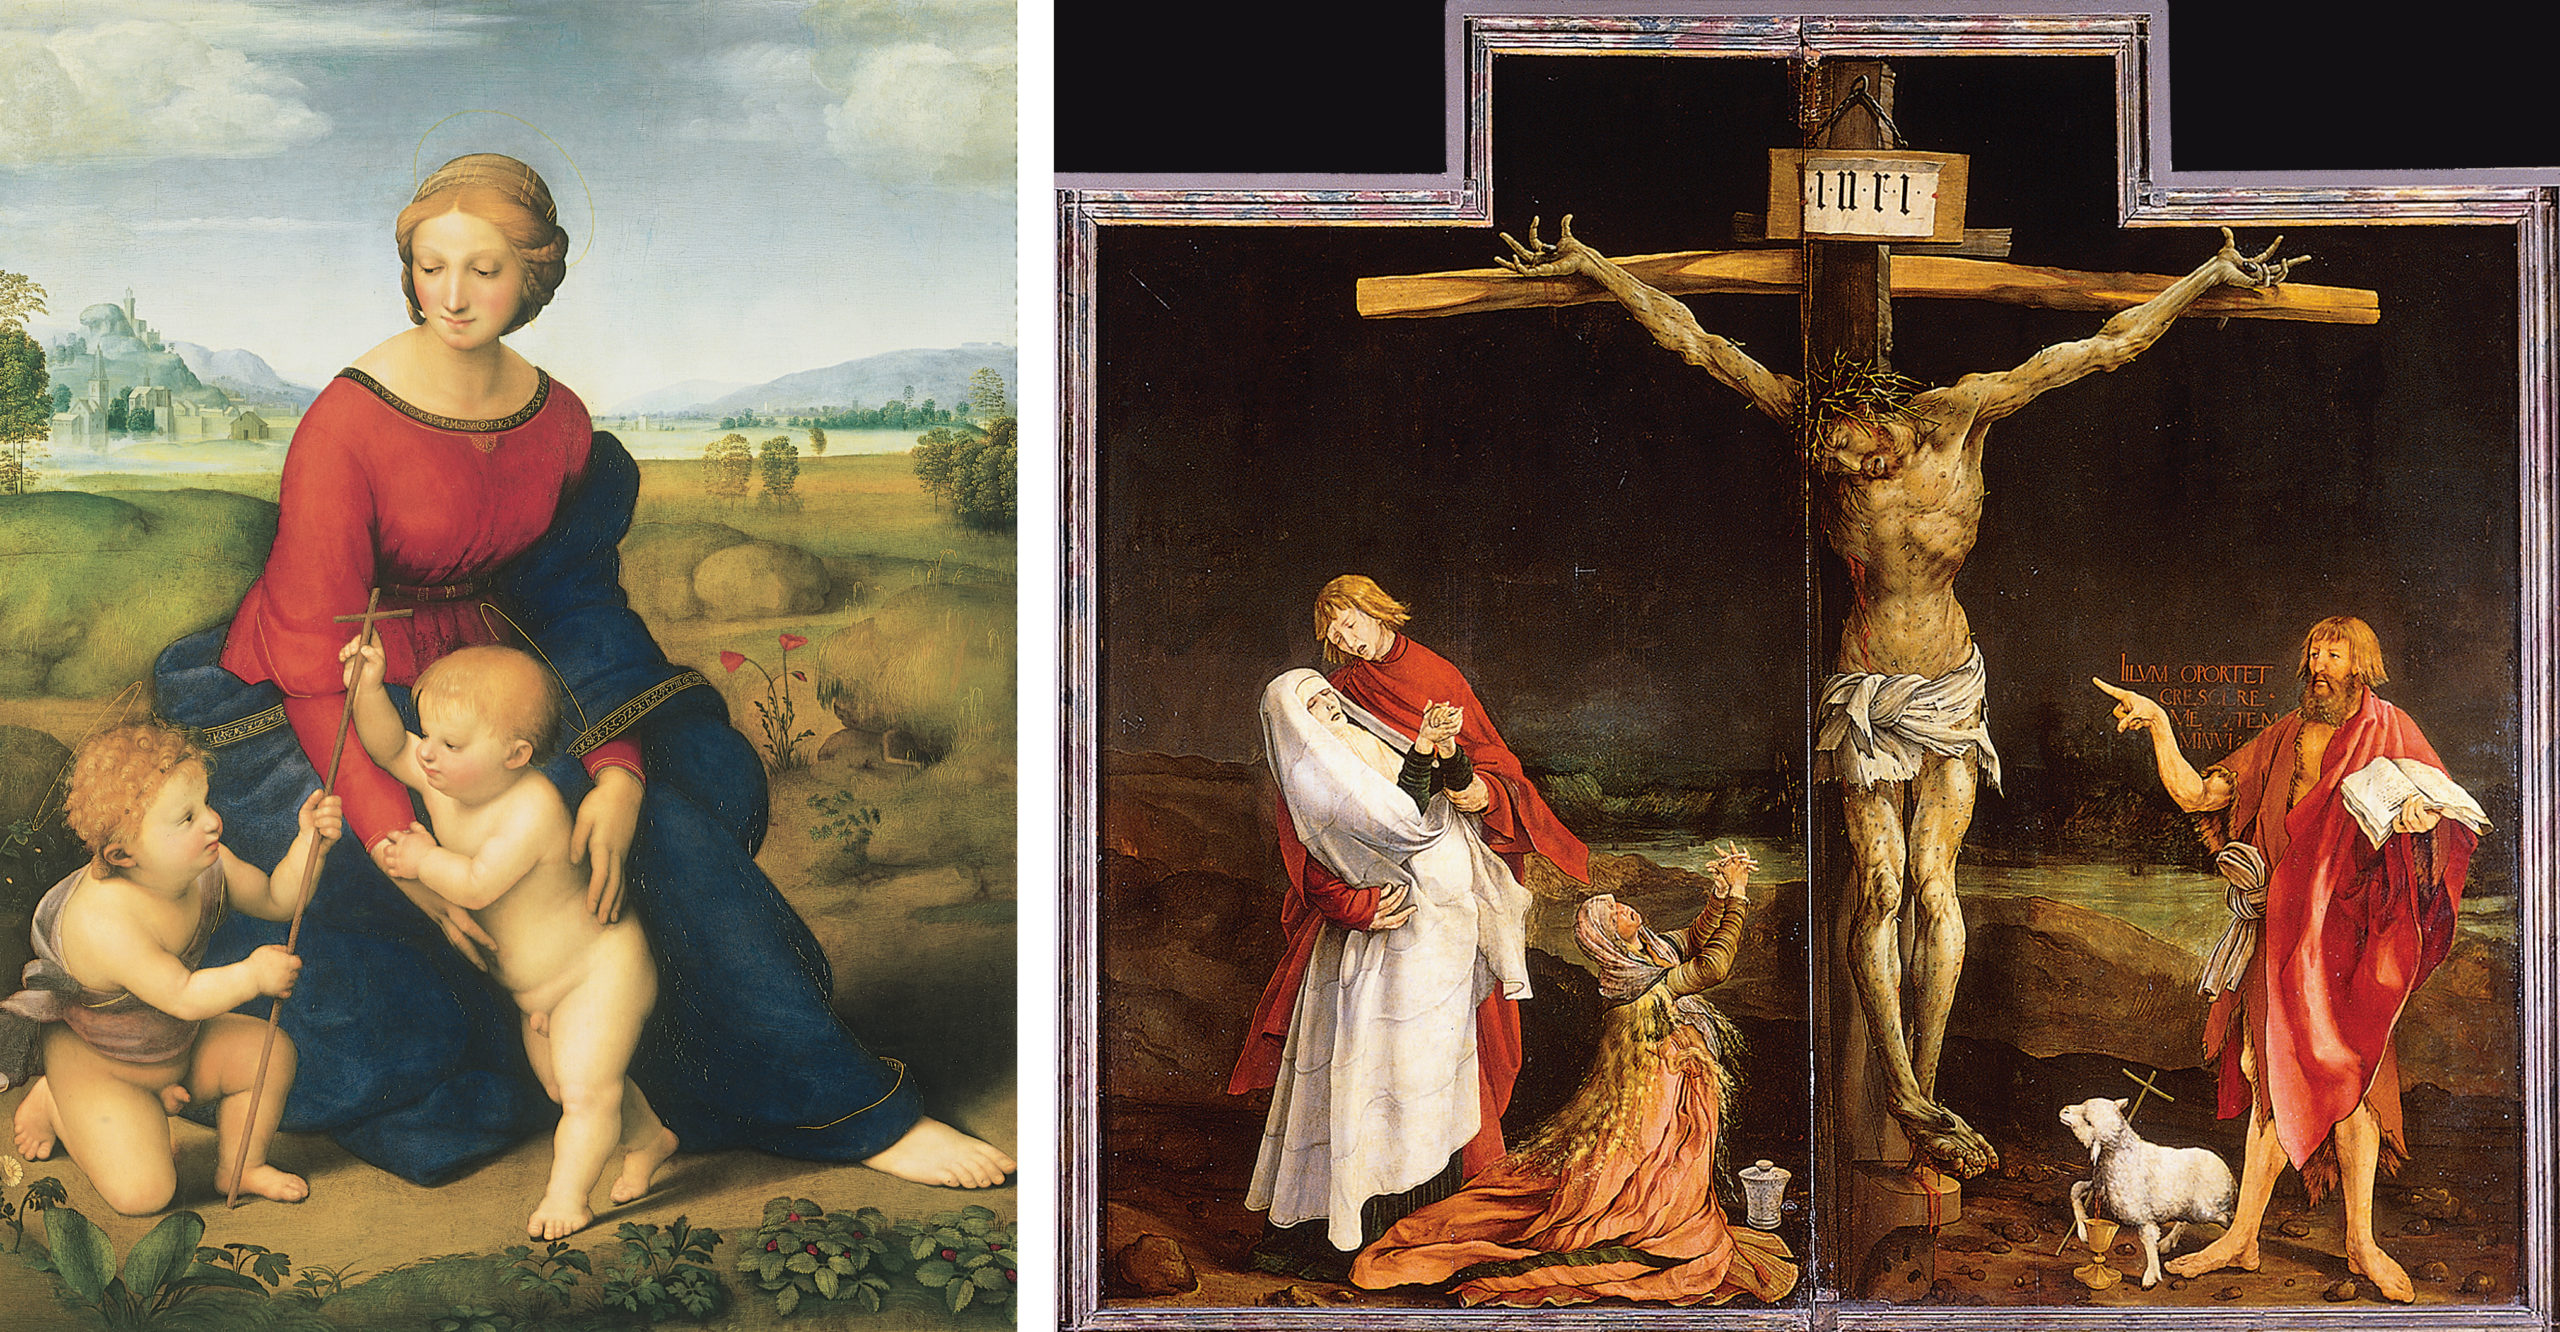 Left: Raphael, Madonna del Prato, 1506, oil on board, 113 x 88 cm (Kunsthistorische Museum, Vienna); Right: Matthias Grünewald, Crucifixion from the Isenheim Altarpiece, 1512-16 (Unterlinden Museum, Colmar, France)